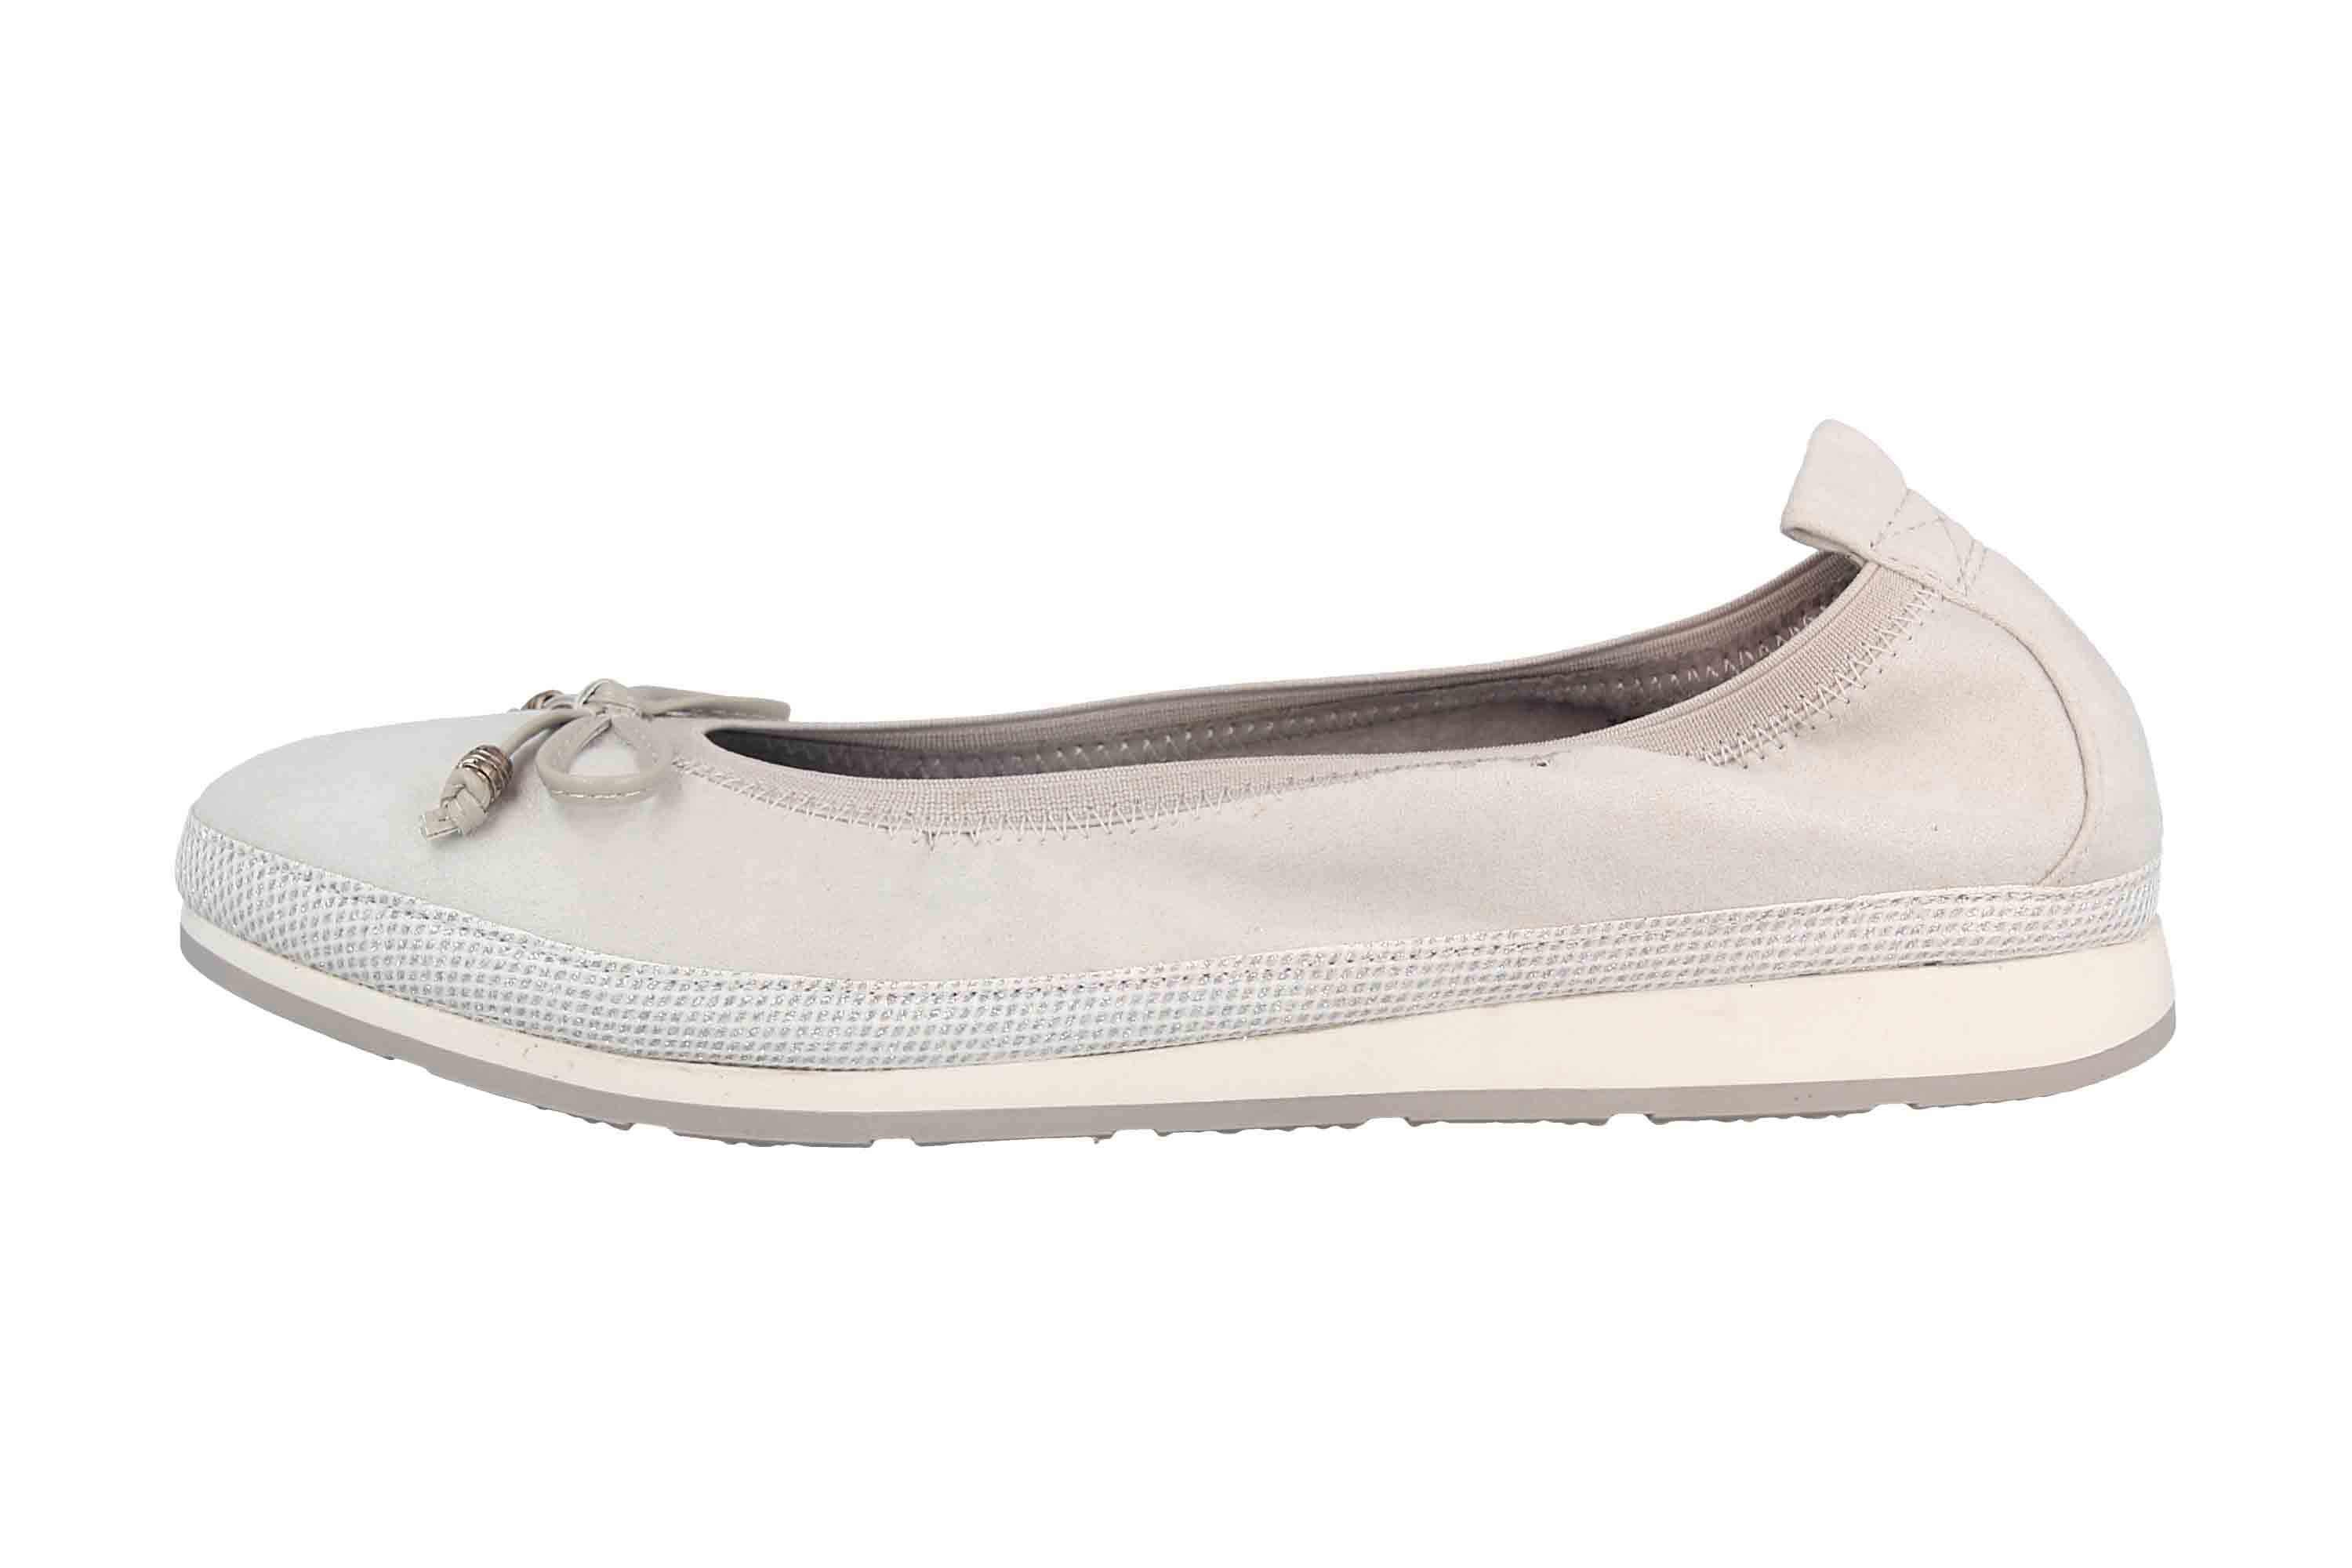 Fitters Footwear 2.132301 Grey MF Ballerina